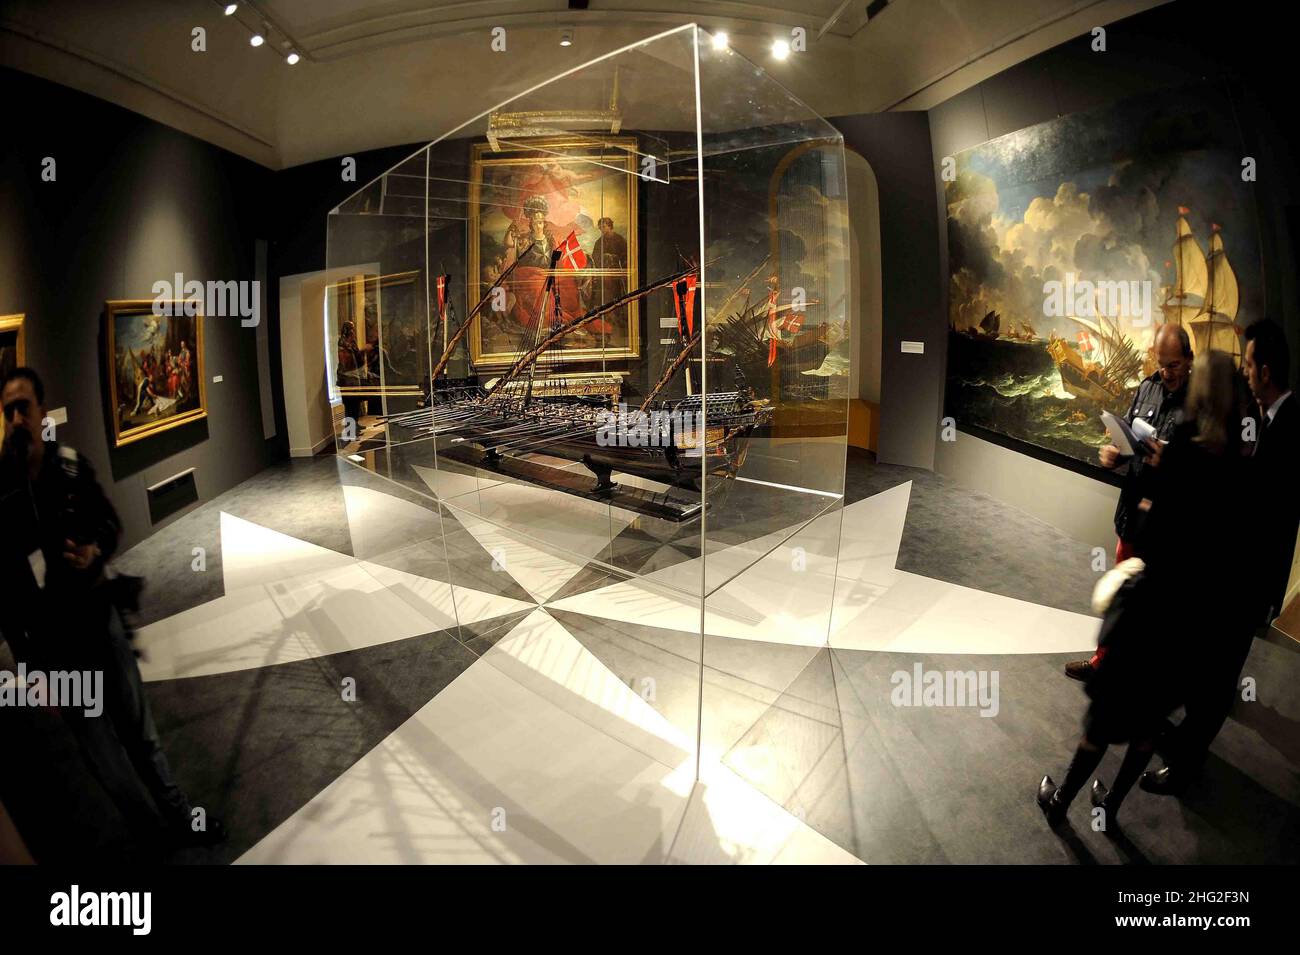 Les visiteurs regardent des objets d'art à l'ouverture de l'exposition « Histoire des Chevaliers » à Turin, en Italie Banque D'Images